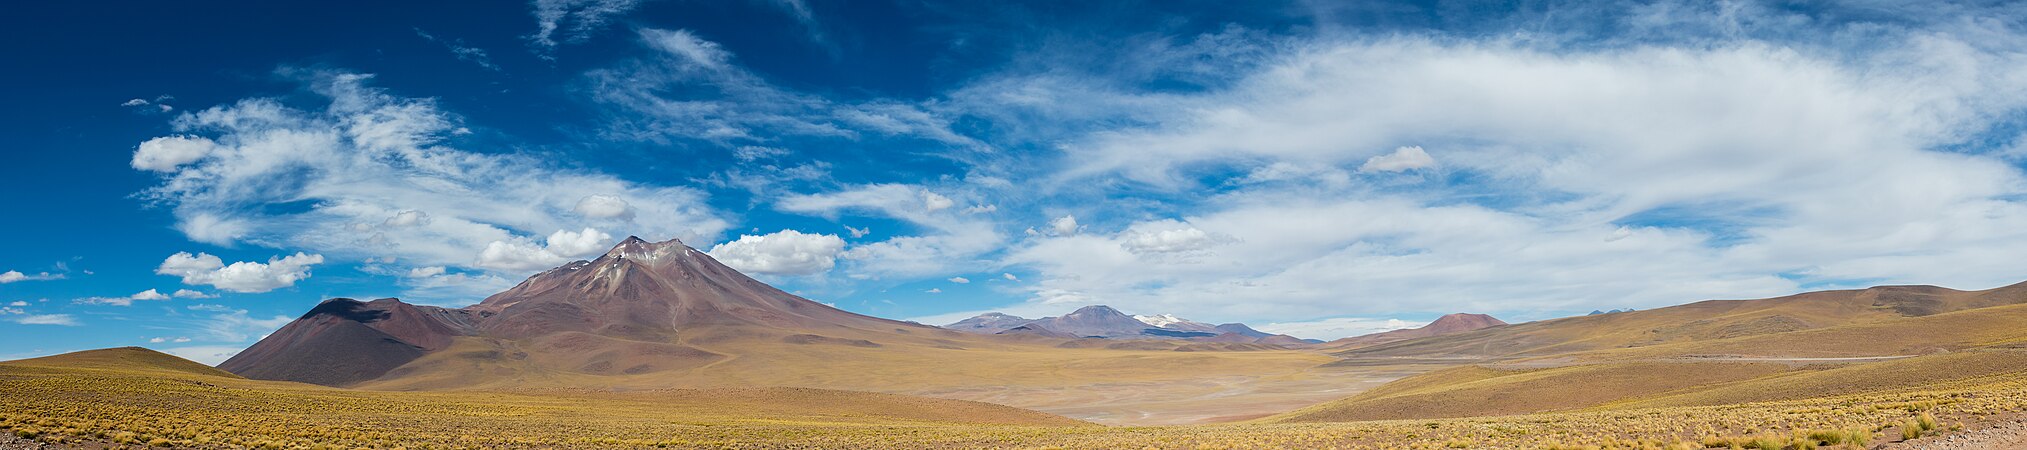 圖為智利北部安地斯山脈的火山景觀，左起為米尼克斯山（5,910米）、圖亞赫托山（5,460米）、穆爾喬塔山（4,567米）和印加瓦西山脈 （5,704米）。